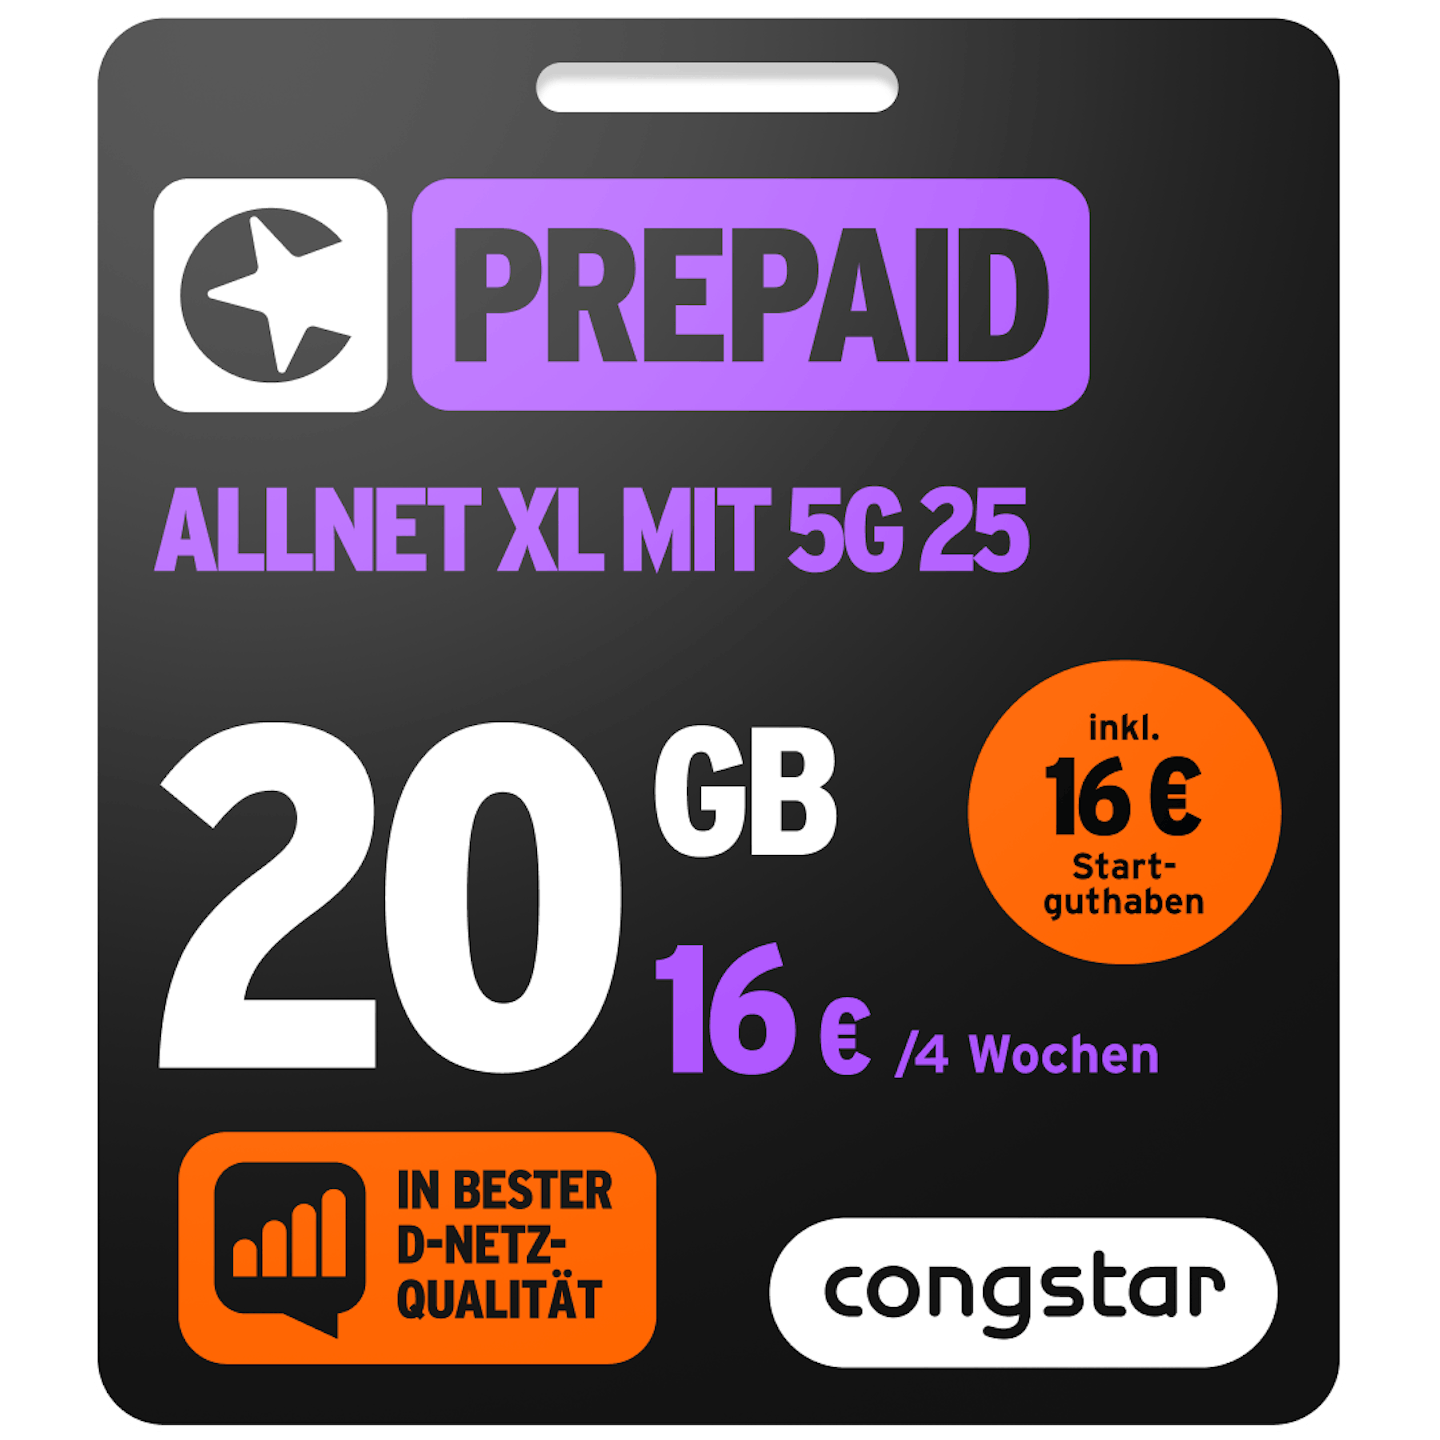 Bild der Verpackung des Prepaid Allnet XL mit 5G 25